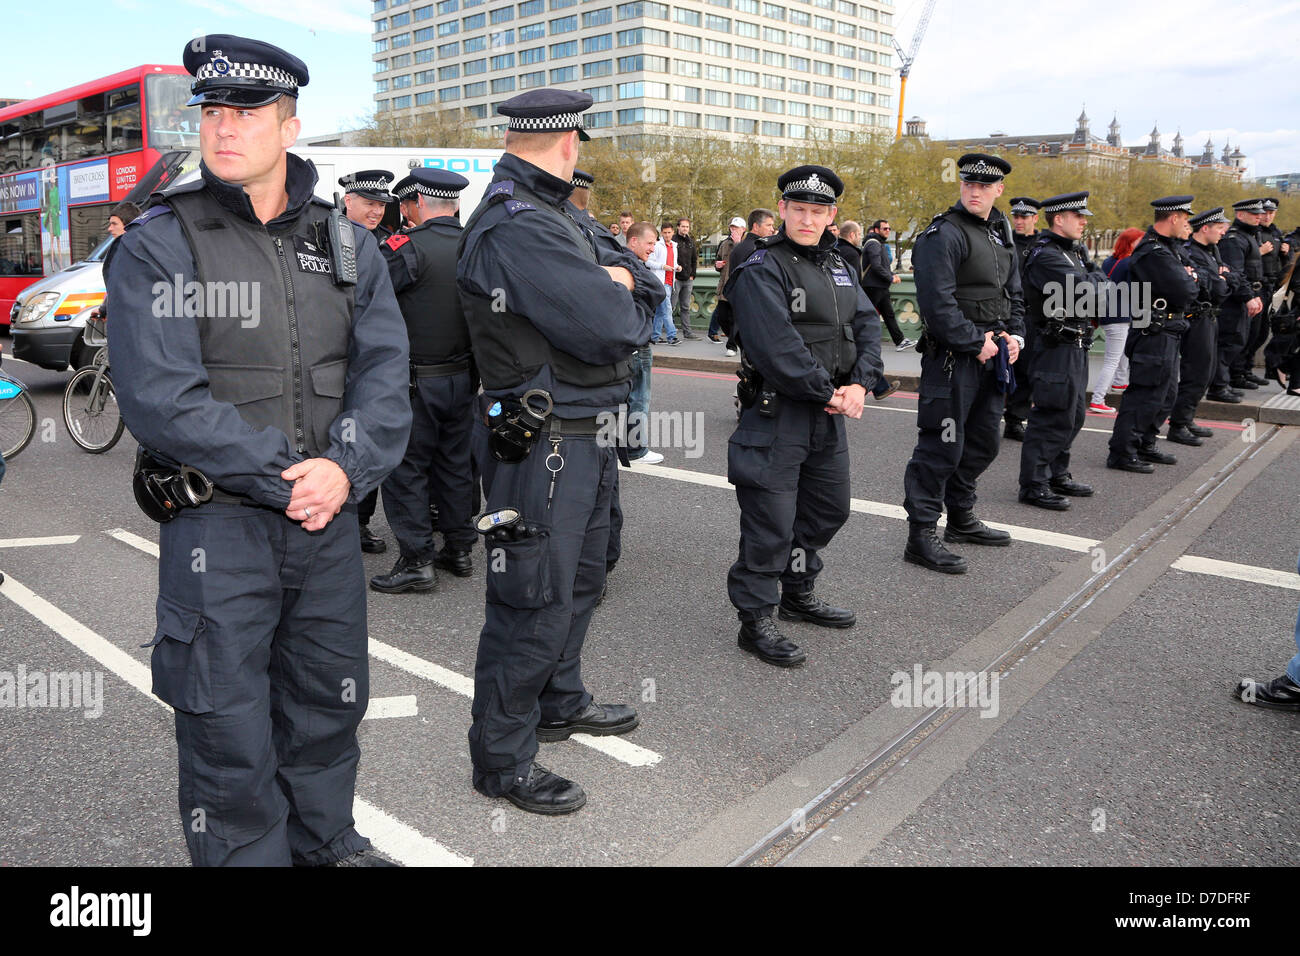 Londra, Regno Unito. Il 4 maggio 2013. I manifestanti bloccati dalla polizia all'anonimo UK anti-austerità dimostrazione sul Westminster Bridge, Londra, Inghilterra. Credito: Paul Brown / Alamy Live News Foto Stock